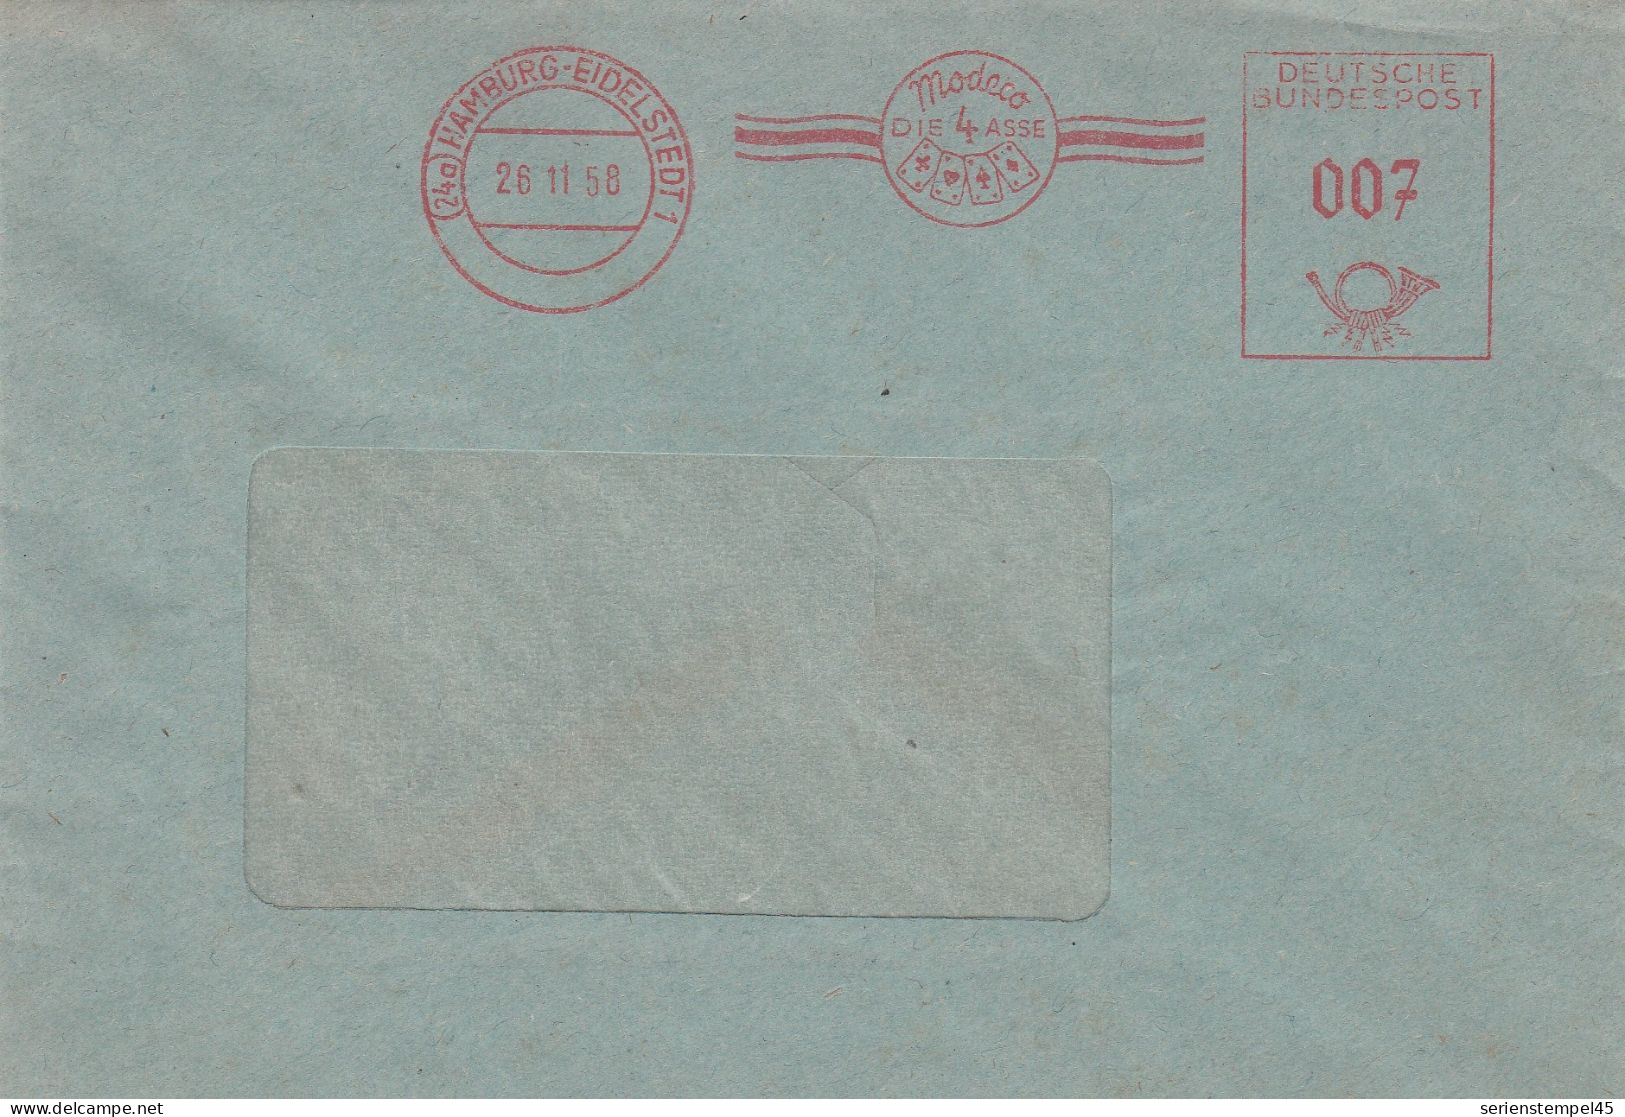 Bund Brief Mit Freistempel Rot Mit Motiv Kartenspiel Hamburg Eidelstedt 1958 Modeco Die 4 Asse - Sin Clasificación